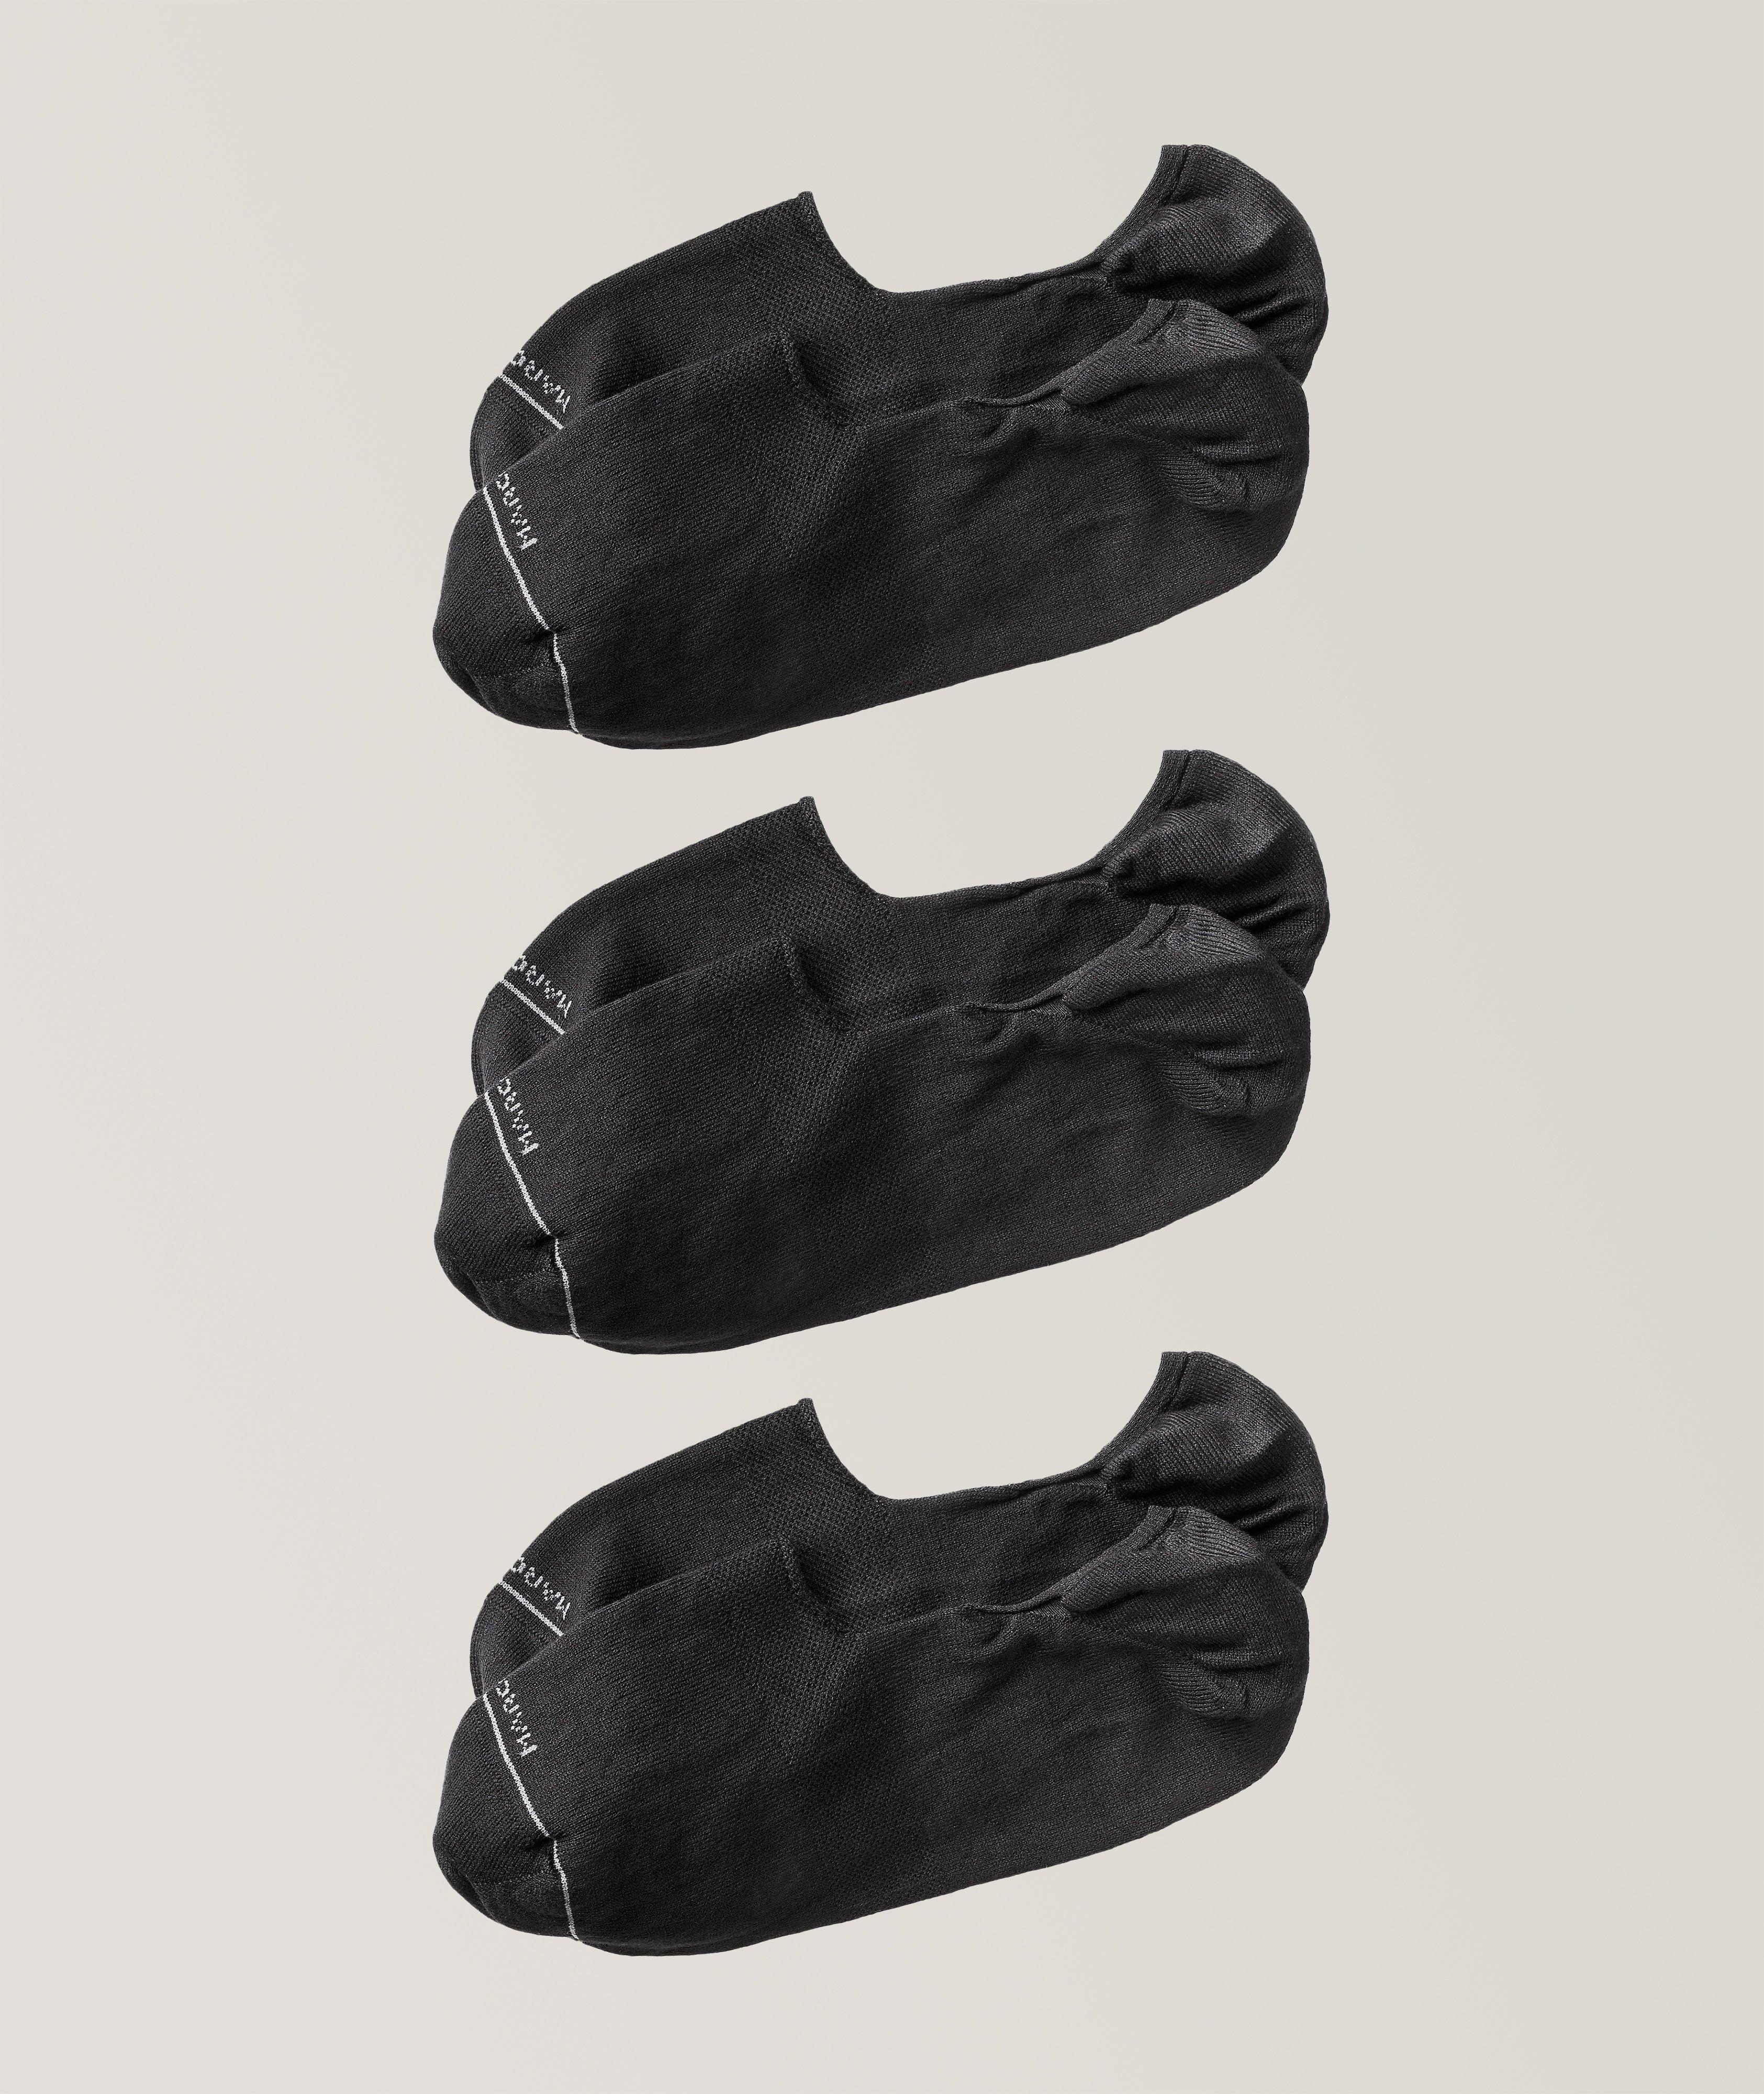 Ensemble de trois paires de chaussettes courtes Invisible Touch image 0